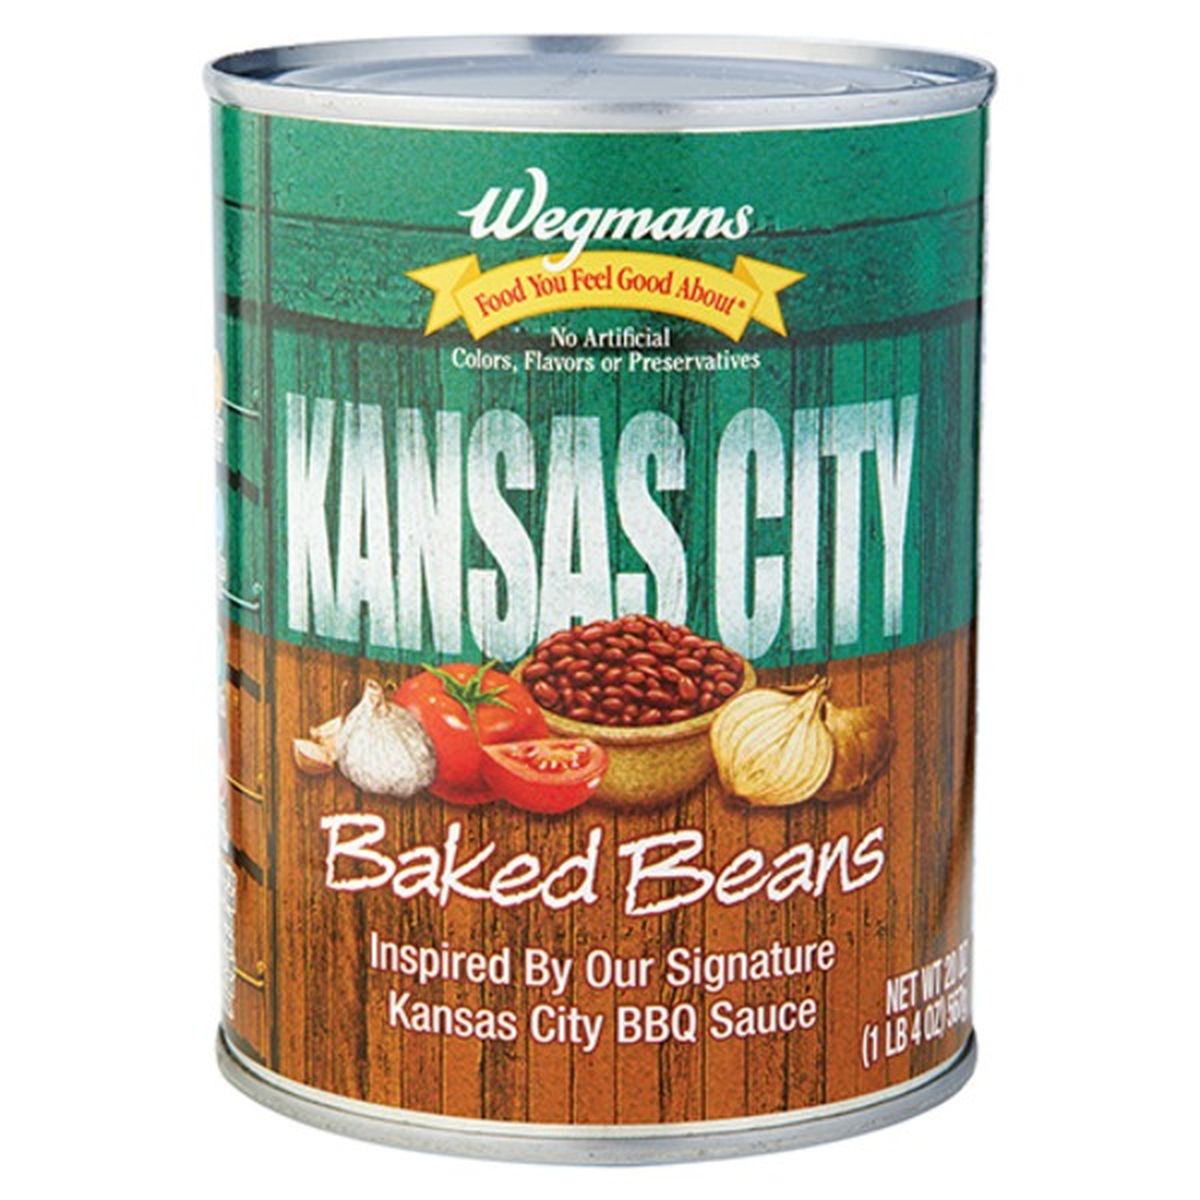 Calories in Wegmans Kansas City Baked Beans